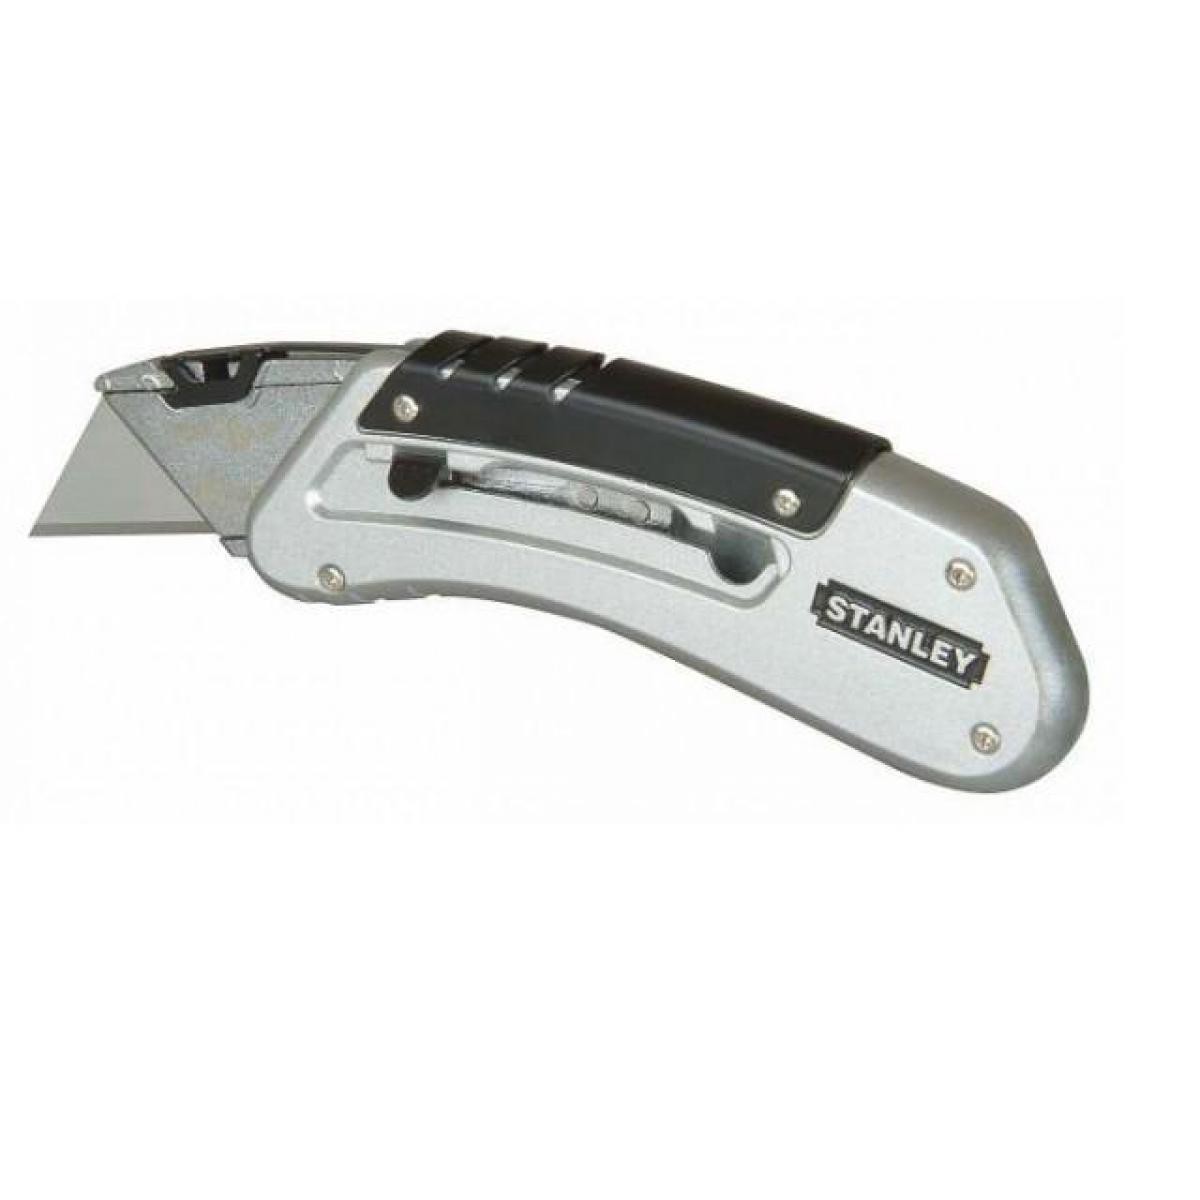 Stanley - Stanley - Couteau de poche à lame rétractable 110mm - 0-10-810 - Outils de coupe